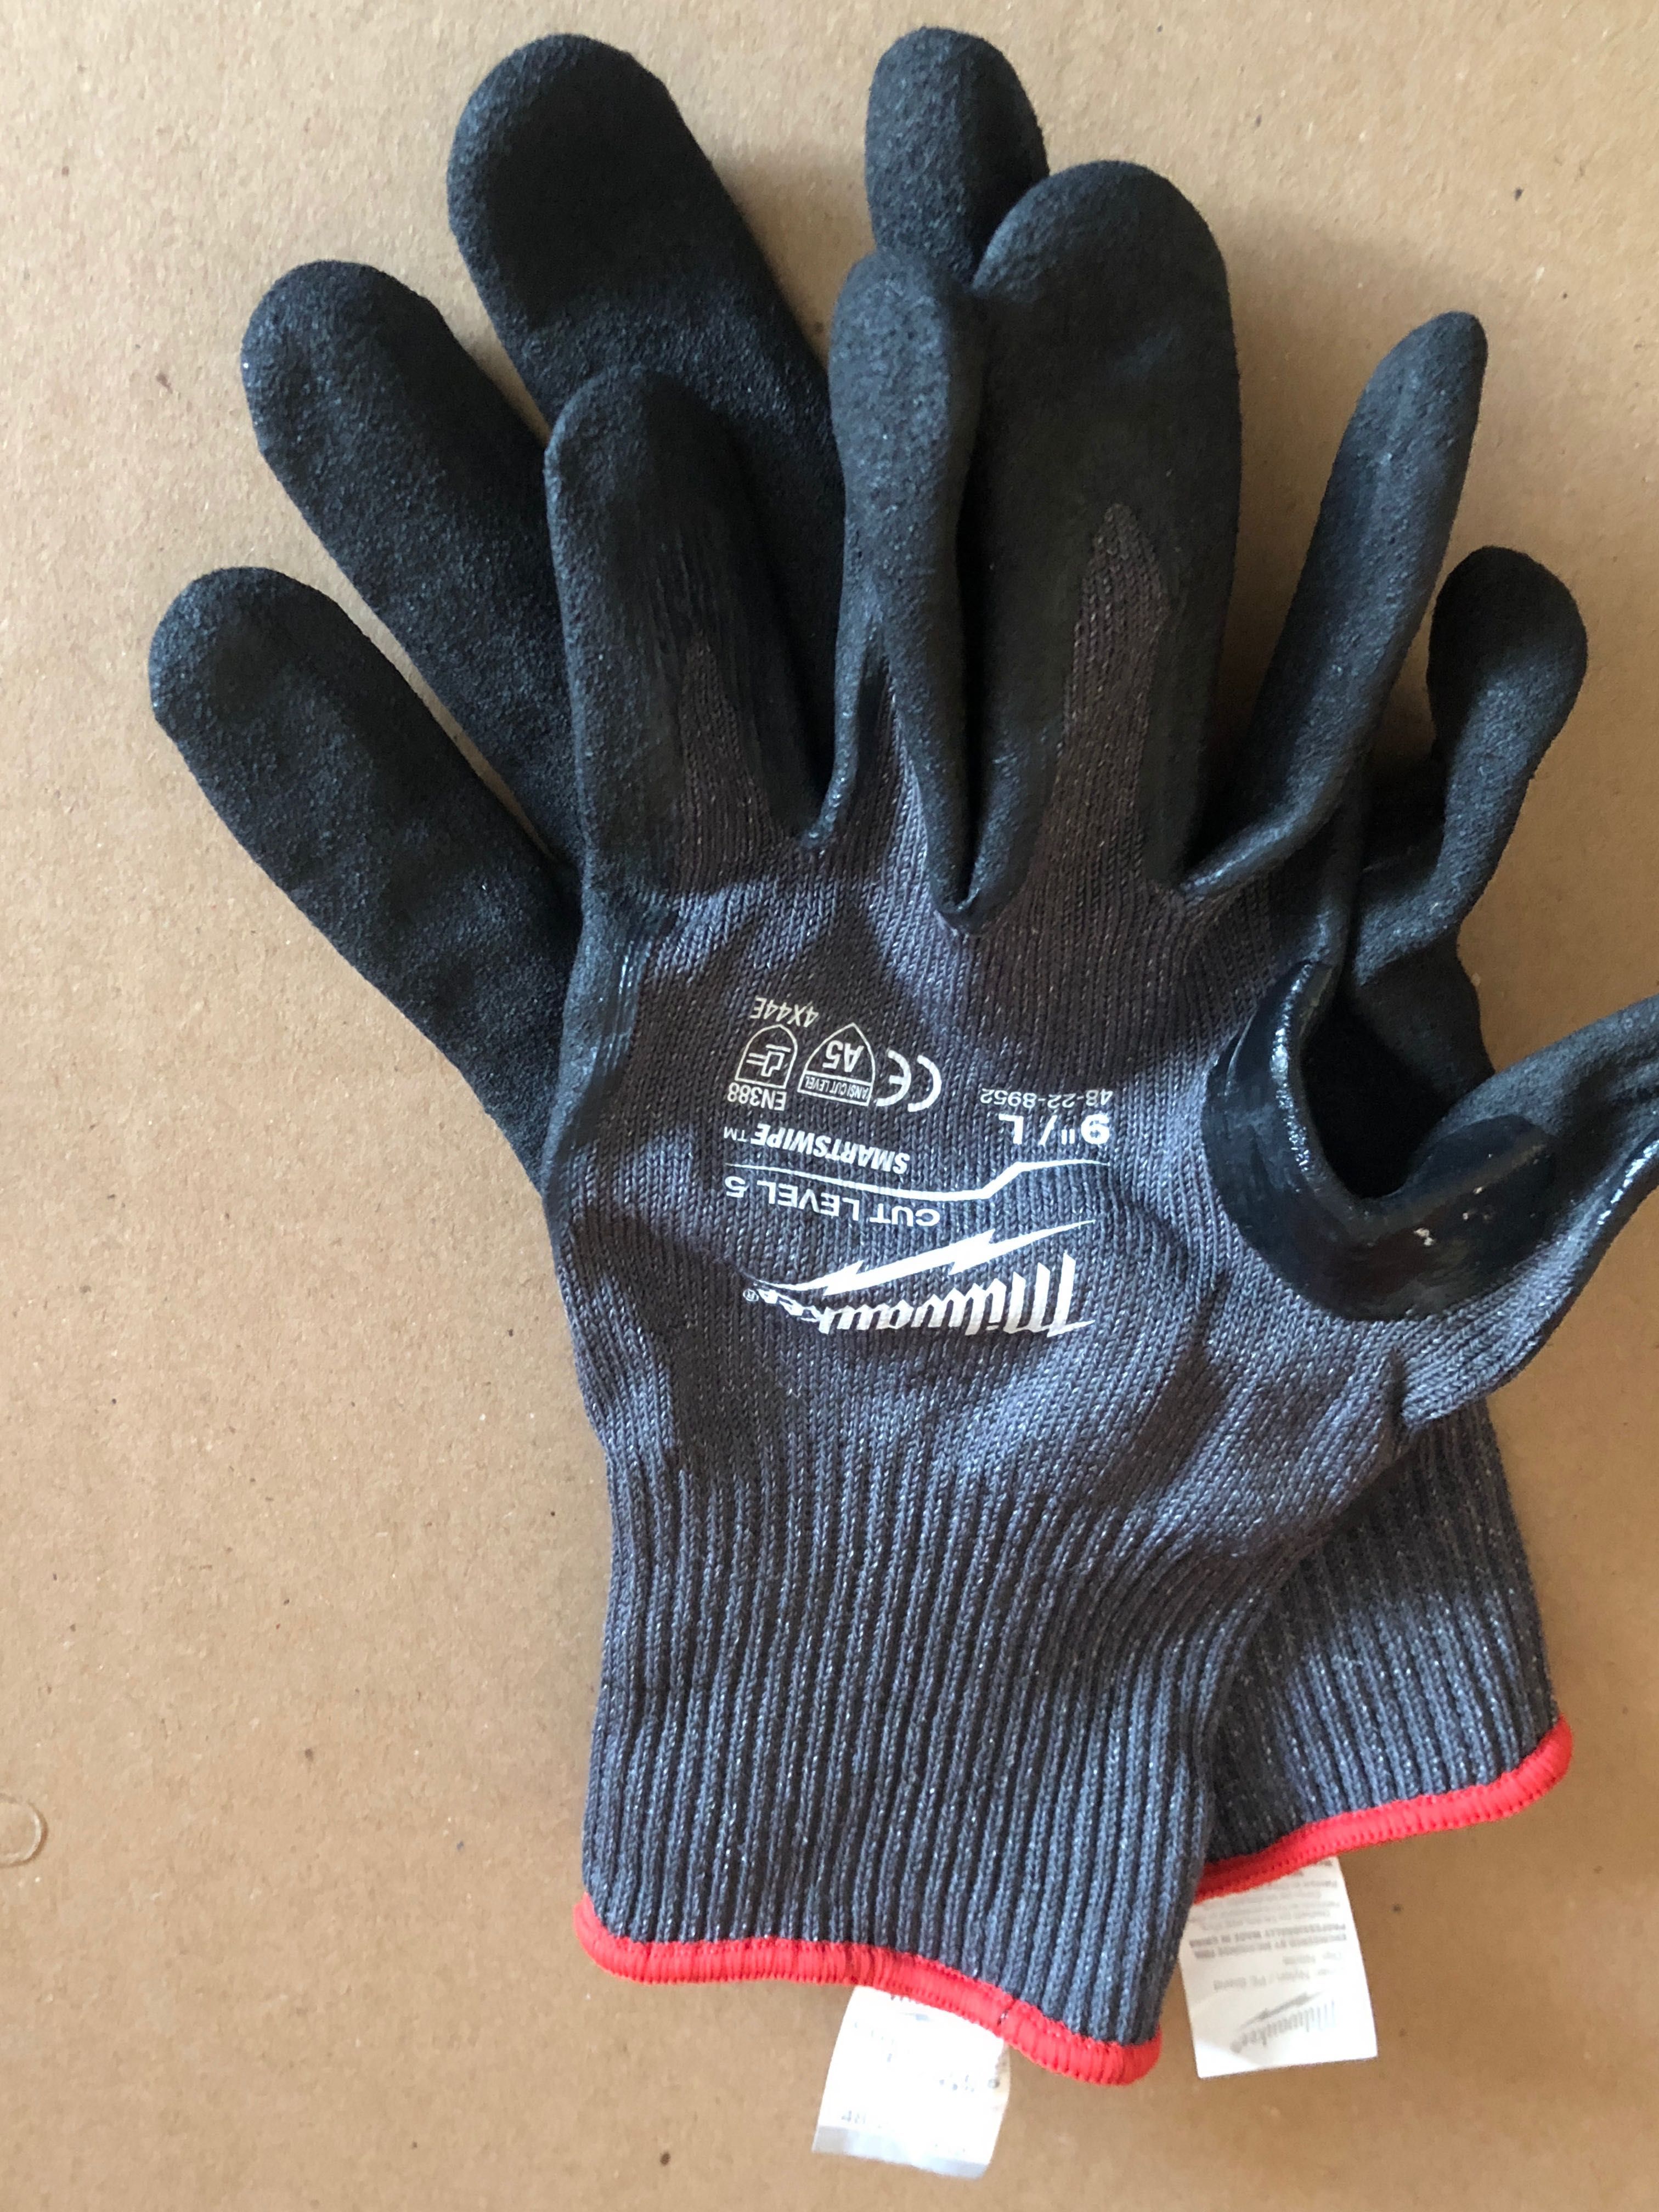 Перчатки, робочі рукавиці, нарукавники Milwaukee